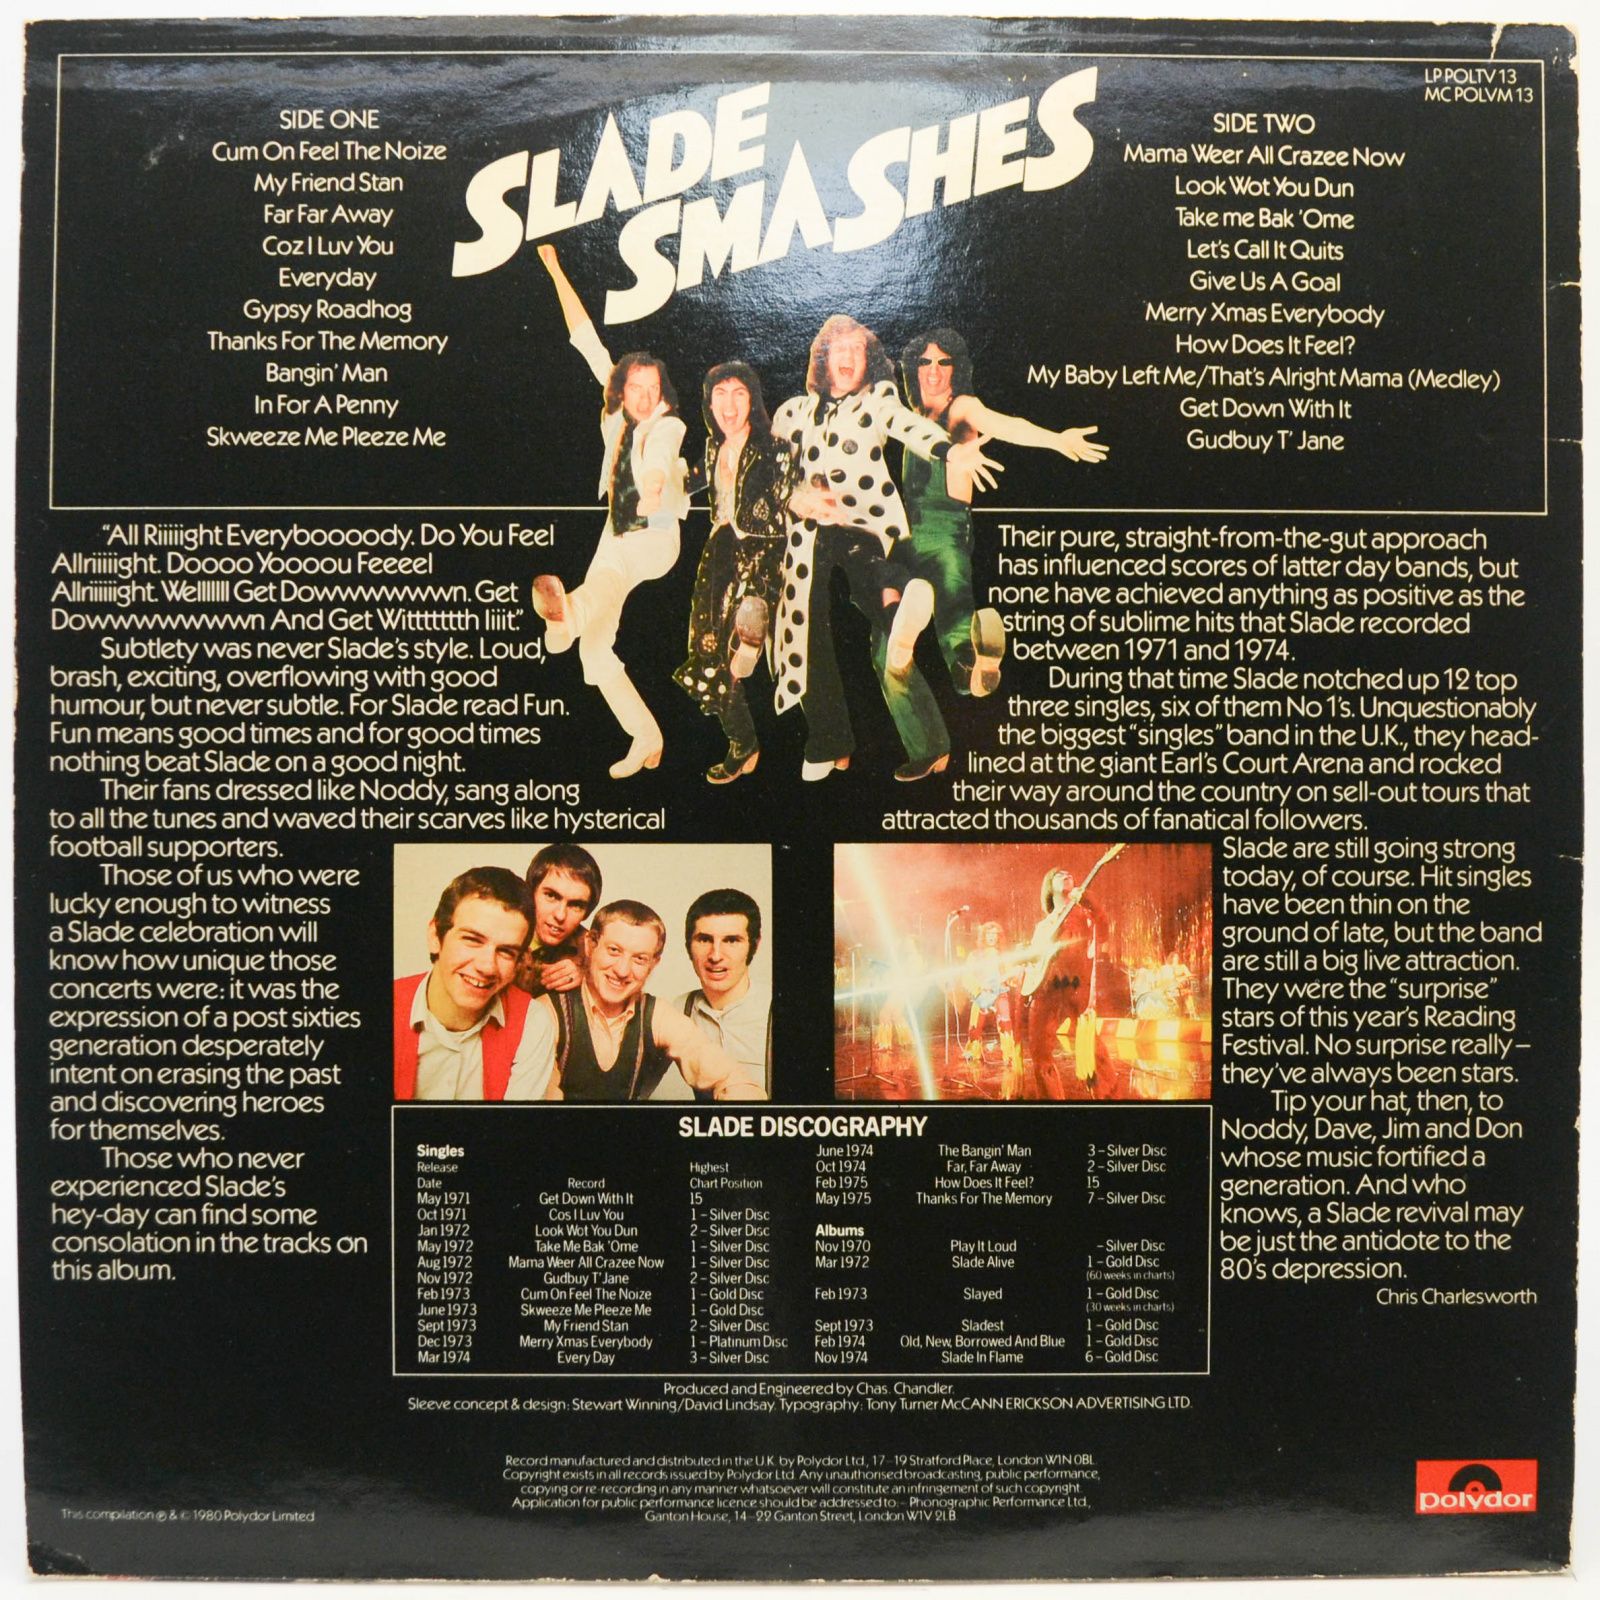 Slade — Smashes (UK), 1980